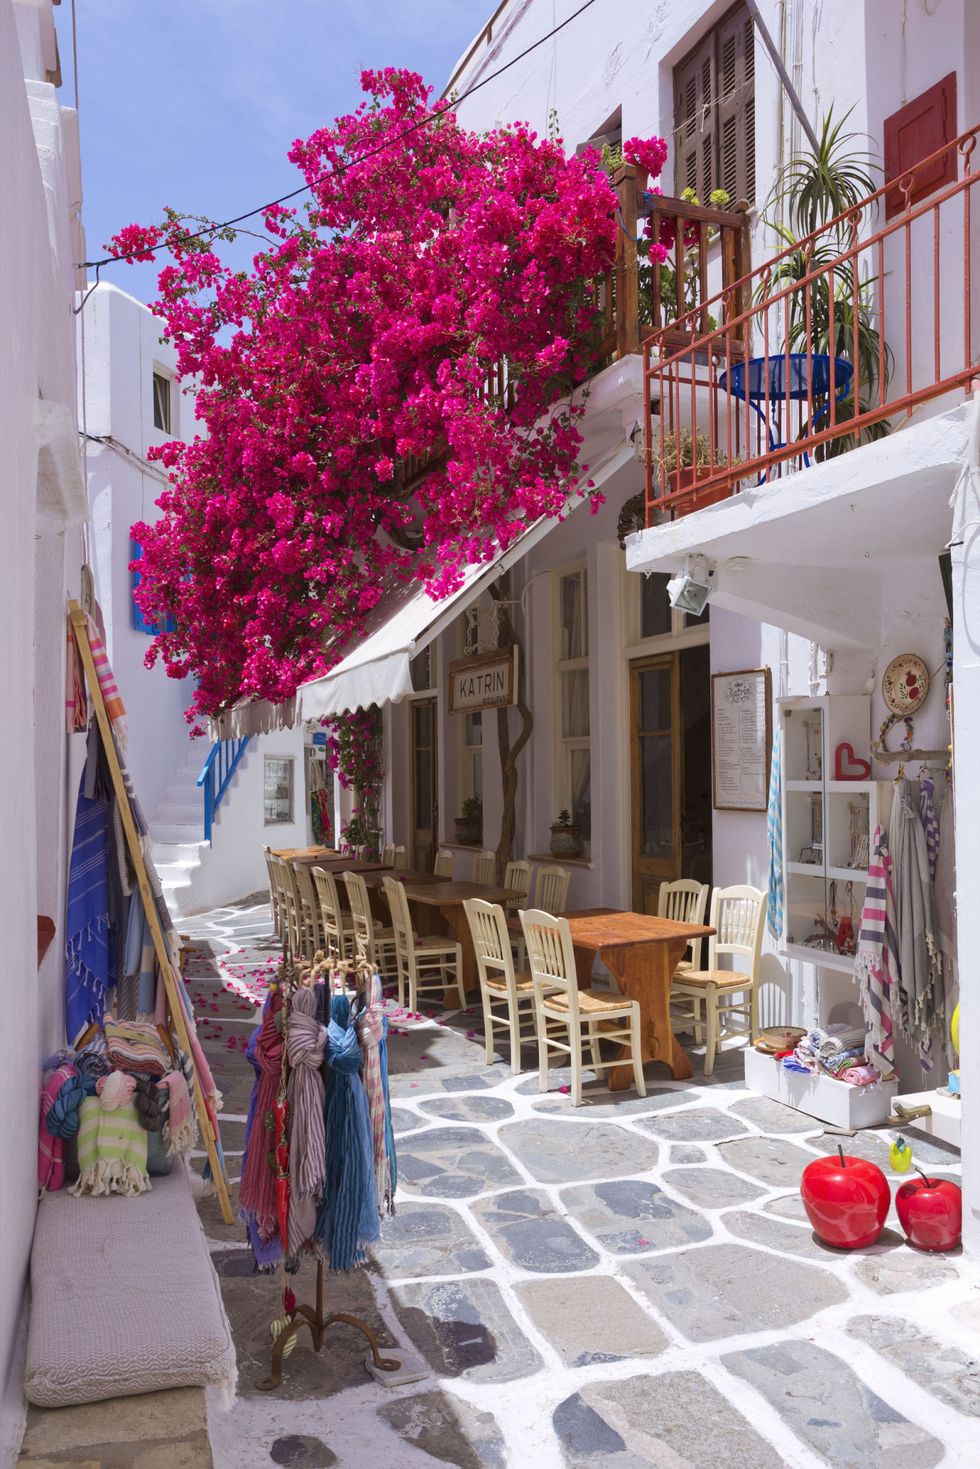 <p><strong><strong>De trend:</strong></strong> Griekenland is weer in opkomst en veroverde zelfs een top 10 plaats in Virtuoso's lijst van fijnste zomerbestemmingen. Over het algemeen steeg het aantal reizen naar Griekenland met 41 procent. Voornamelijk Santorini, Mykonos, Kreta en Rhodos blijken in trek.</p><p><strong>Om te proberen:</strong><strong> </strong>Modevolk houdt er van vakantie te vieren aan de Griekse kusten van Santorini en Mykonos. Zeker een aanrader dus! Probeer <a href="http://www.villakatikies-santorini.com/" target="_blank">Villa Katikies</a>, een luxueus hotel in Sanorini, geliefd bij modebloggers en jet setters.</p>